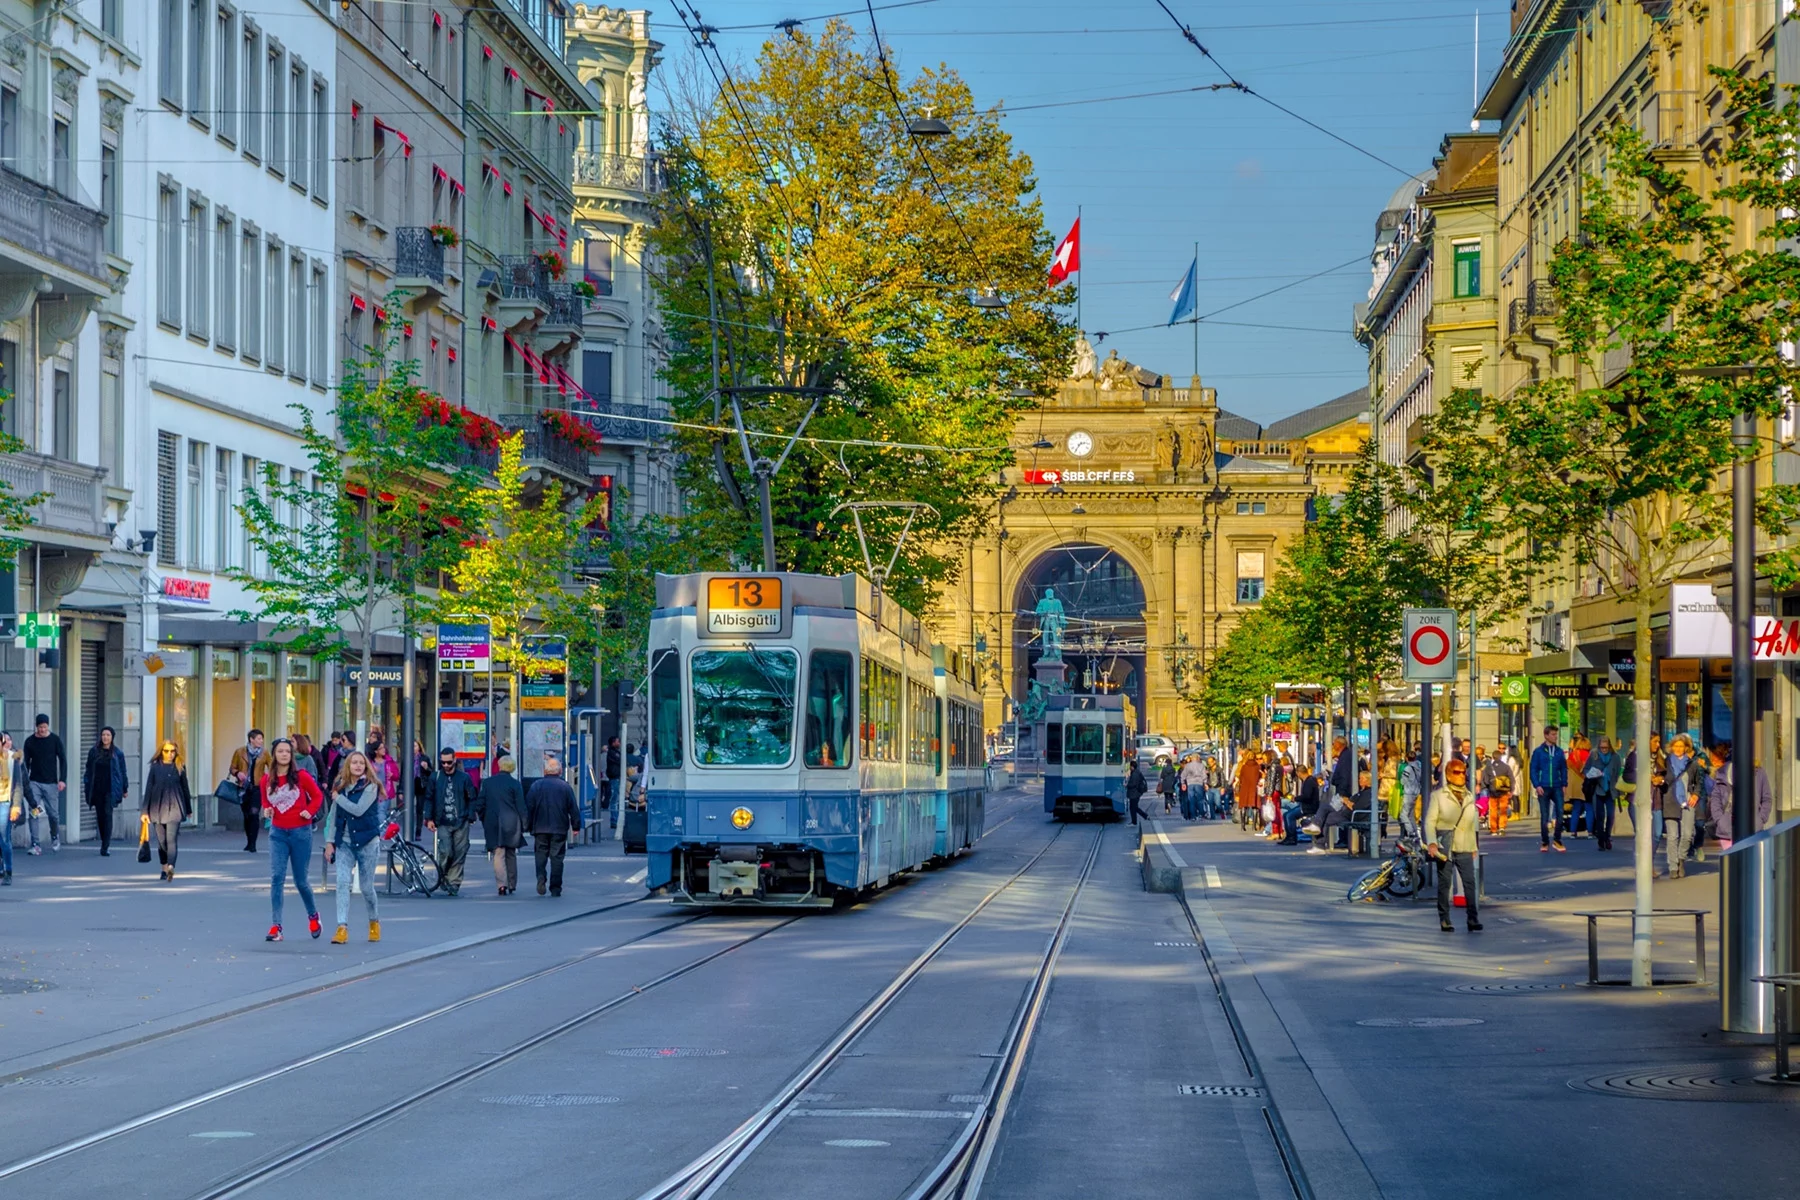 A busy street in Zurich, Switzerland